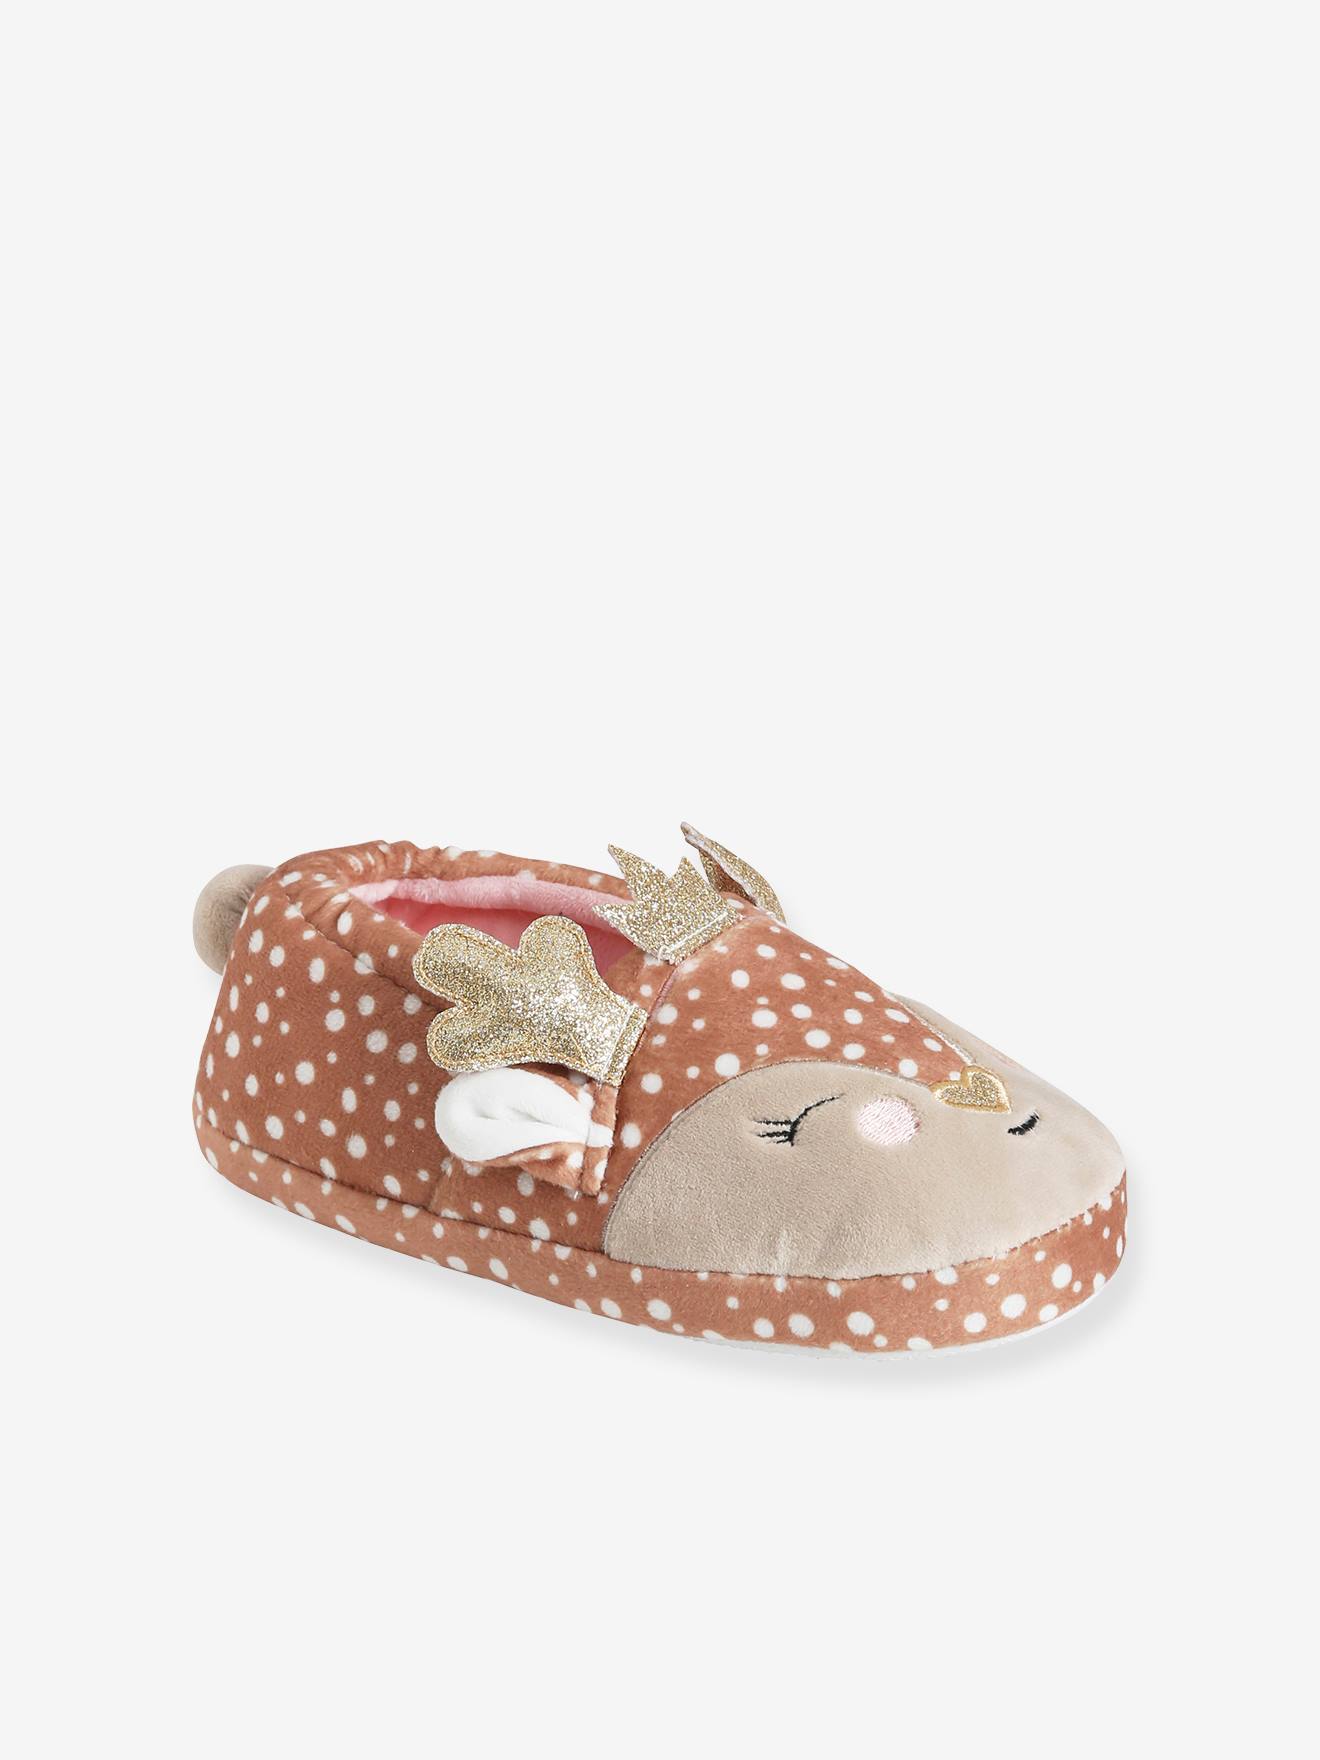 Chaussures Chaussures fille Bottes Bottes de Pocahanta fille 2 à 3 ans 